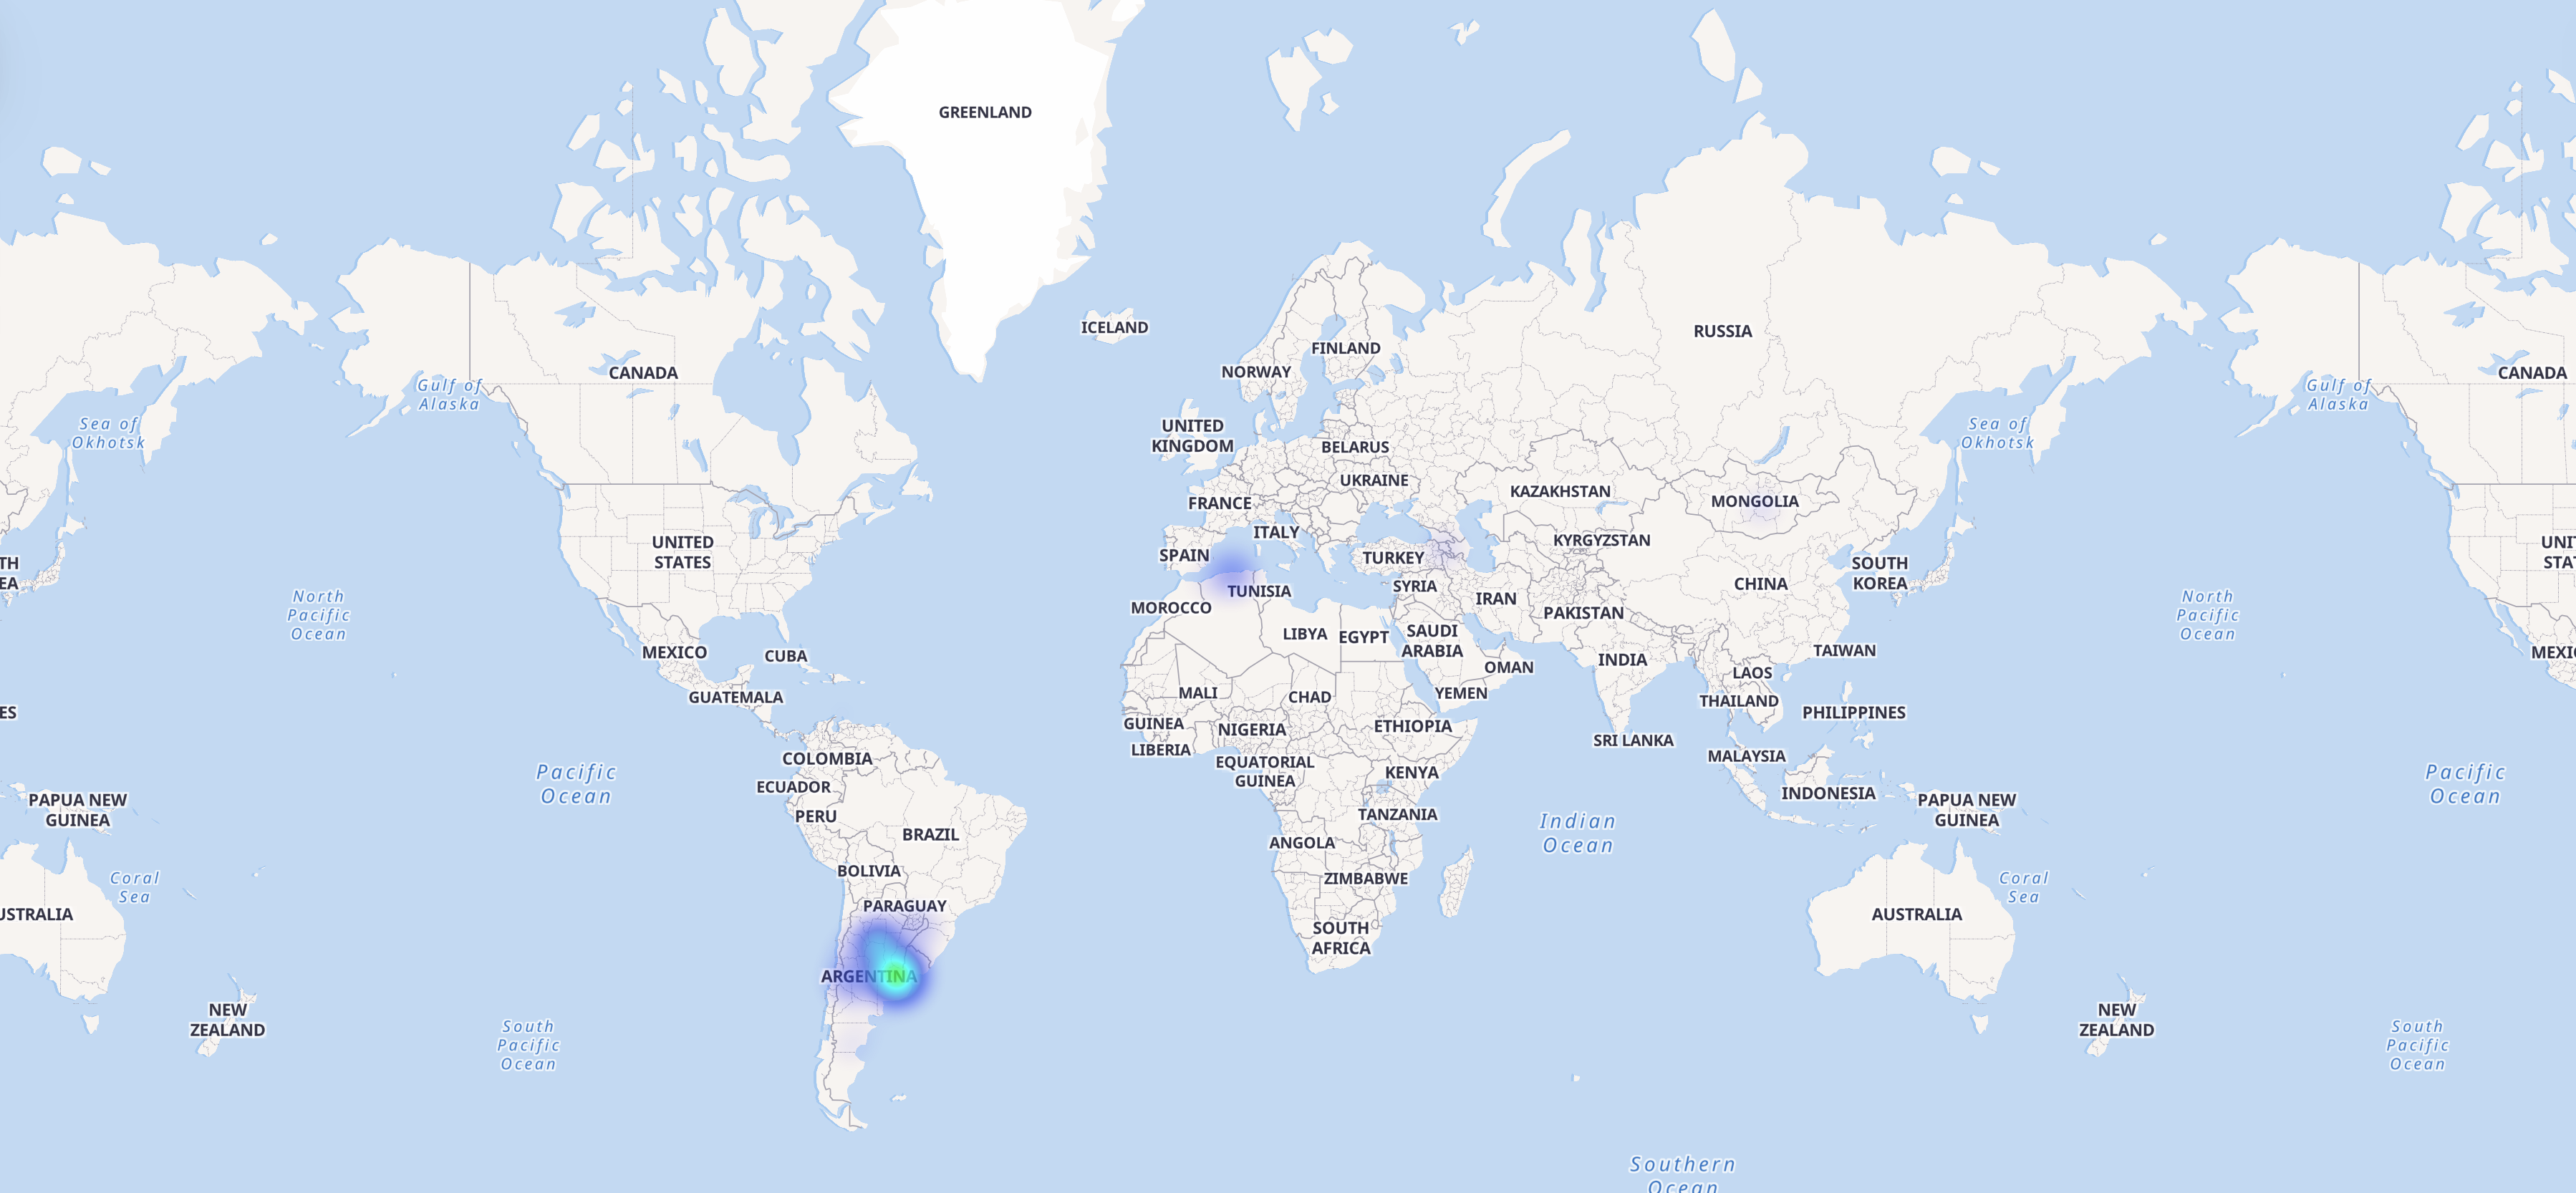 Тепловая карта подключений пользователей по миру